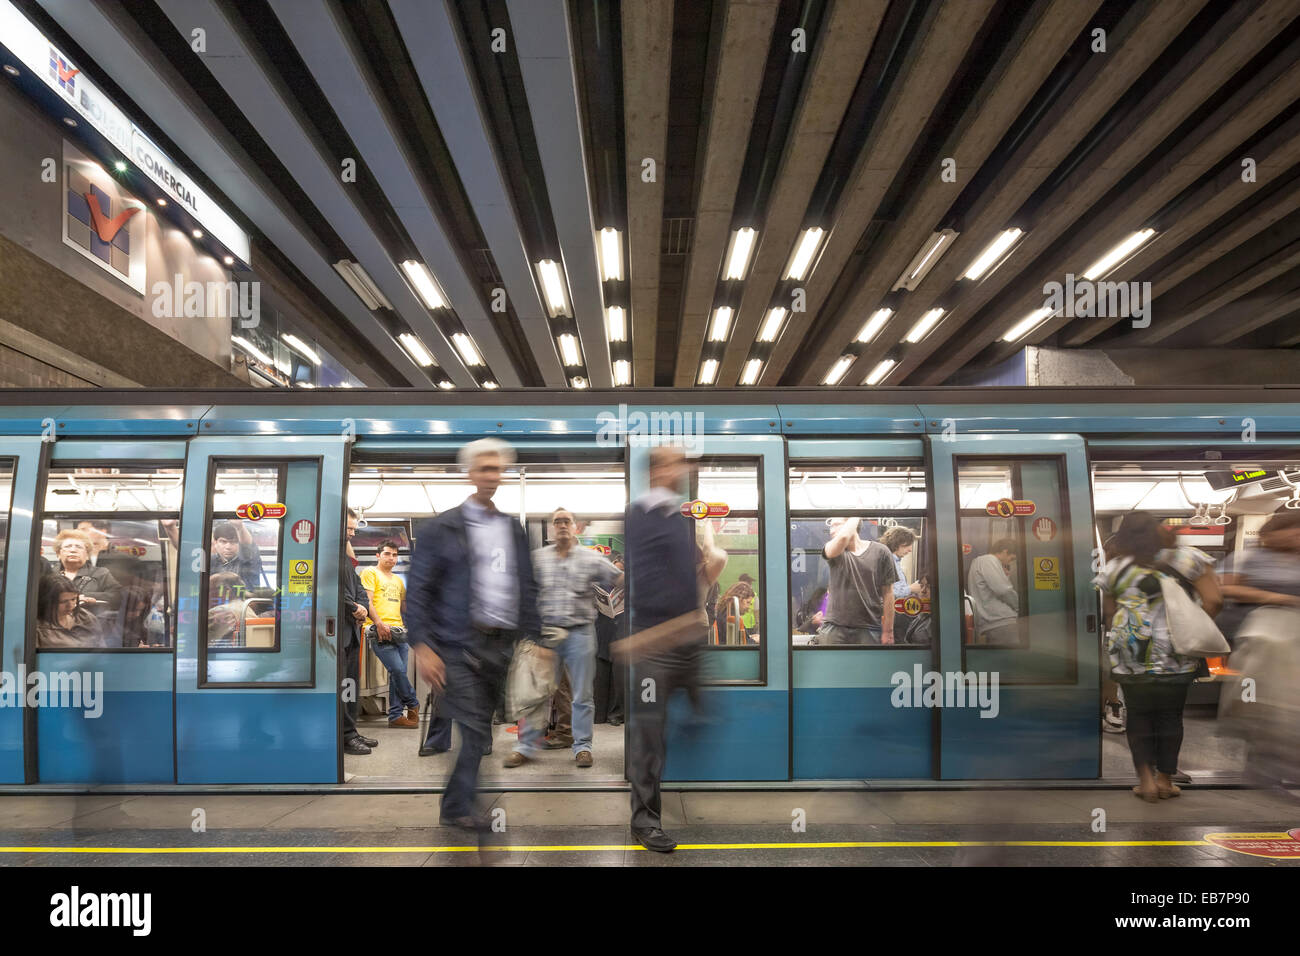 Santiago de Chili et laissant les navetteurs entrant en train de métro Métro station pendant les heures de pointe. Banque D'Images